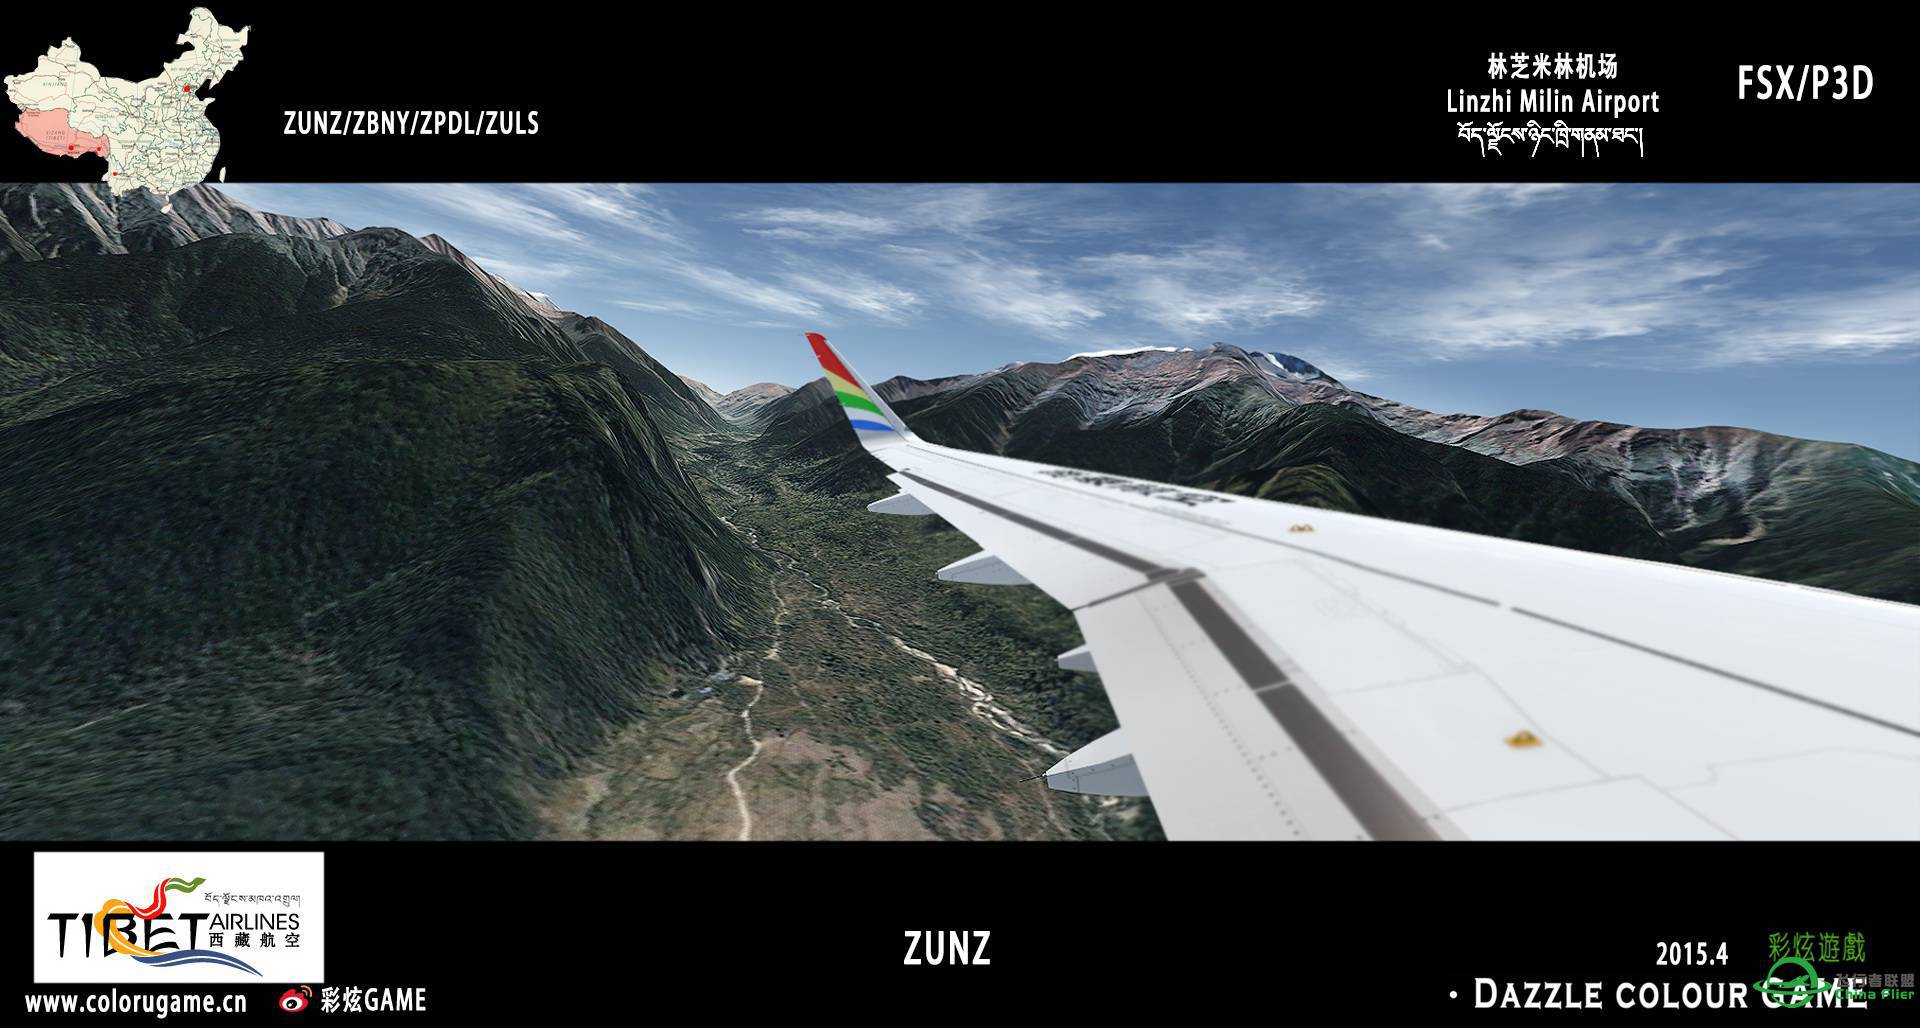 彩炫地景：林芝米林机场（ZUNZ）正式发布！-6273 